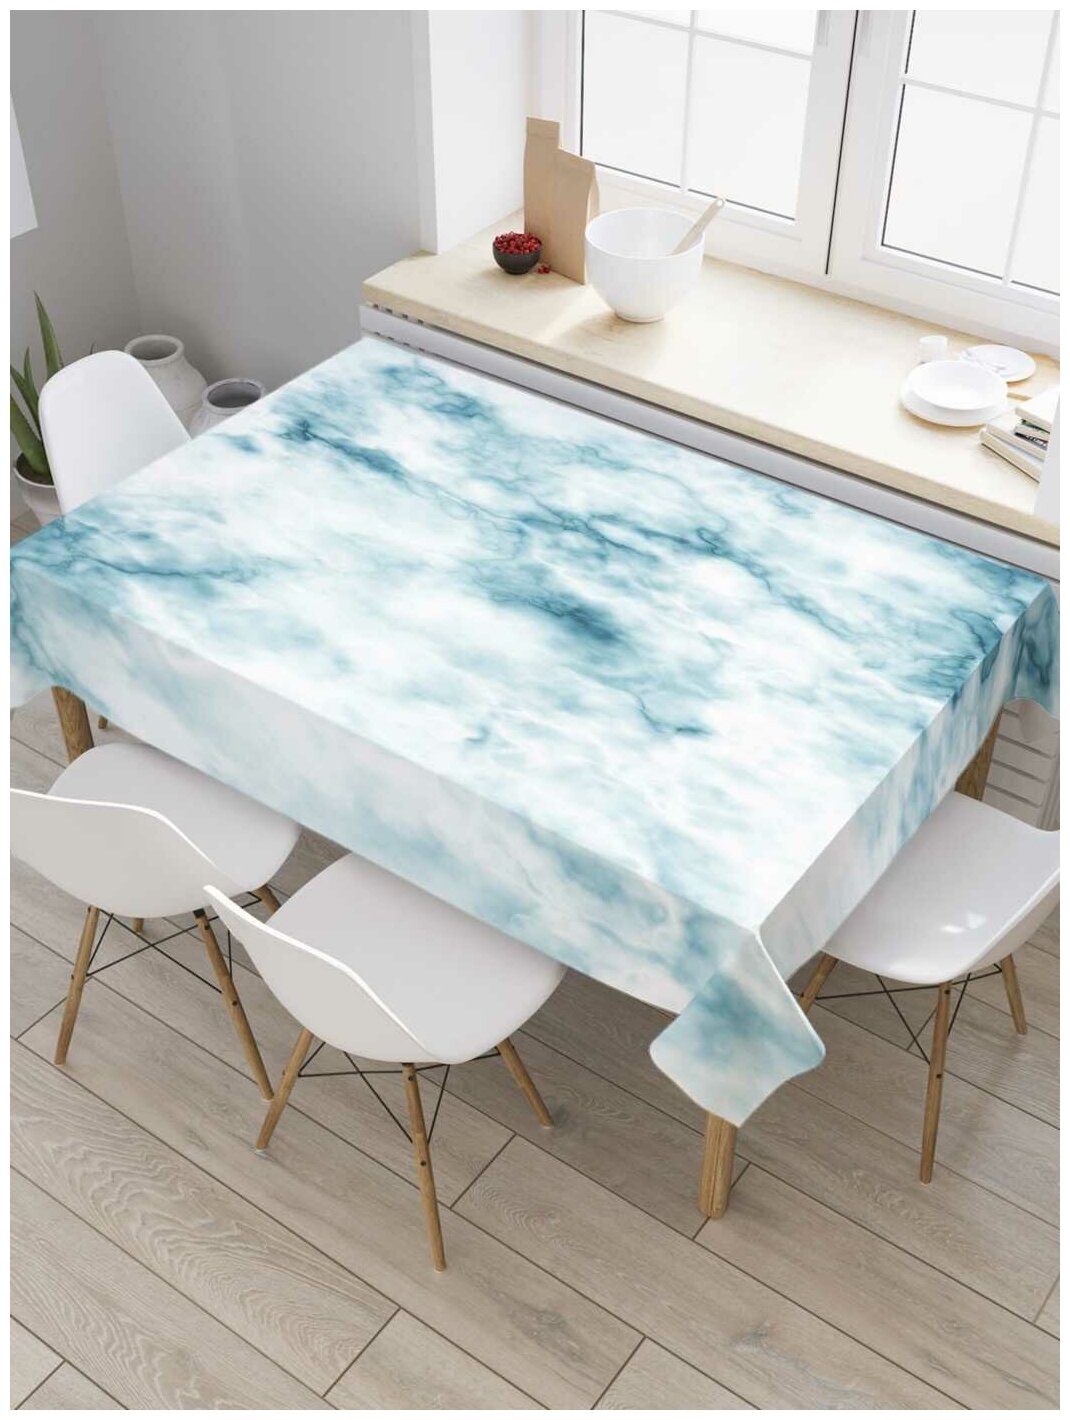 Прямоугольная водоотталкивающая тканевая скатерть на стол JoyArty с рисунком "Облачный мрамор" 145 на 180 смбелый, голубой, синий